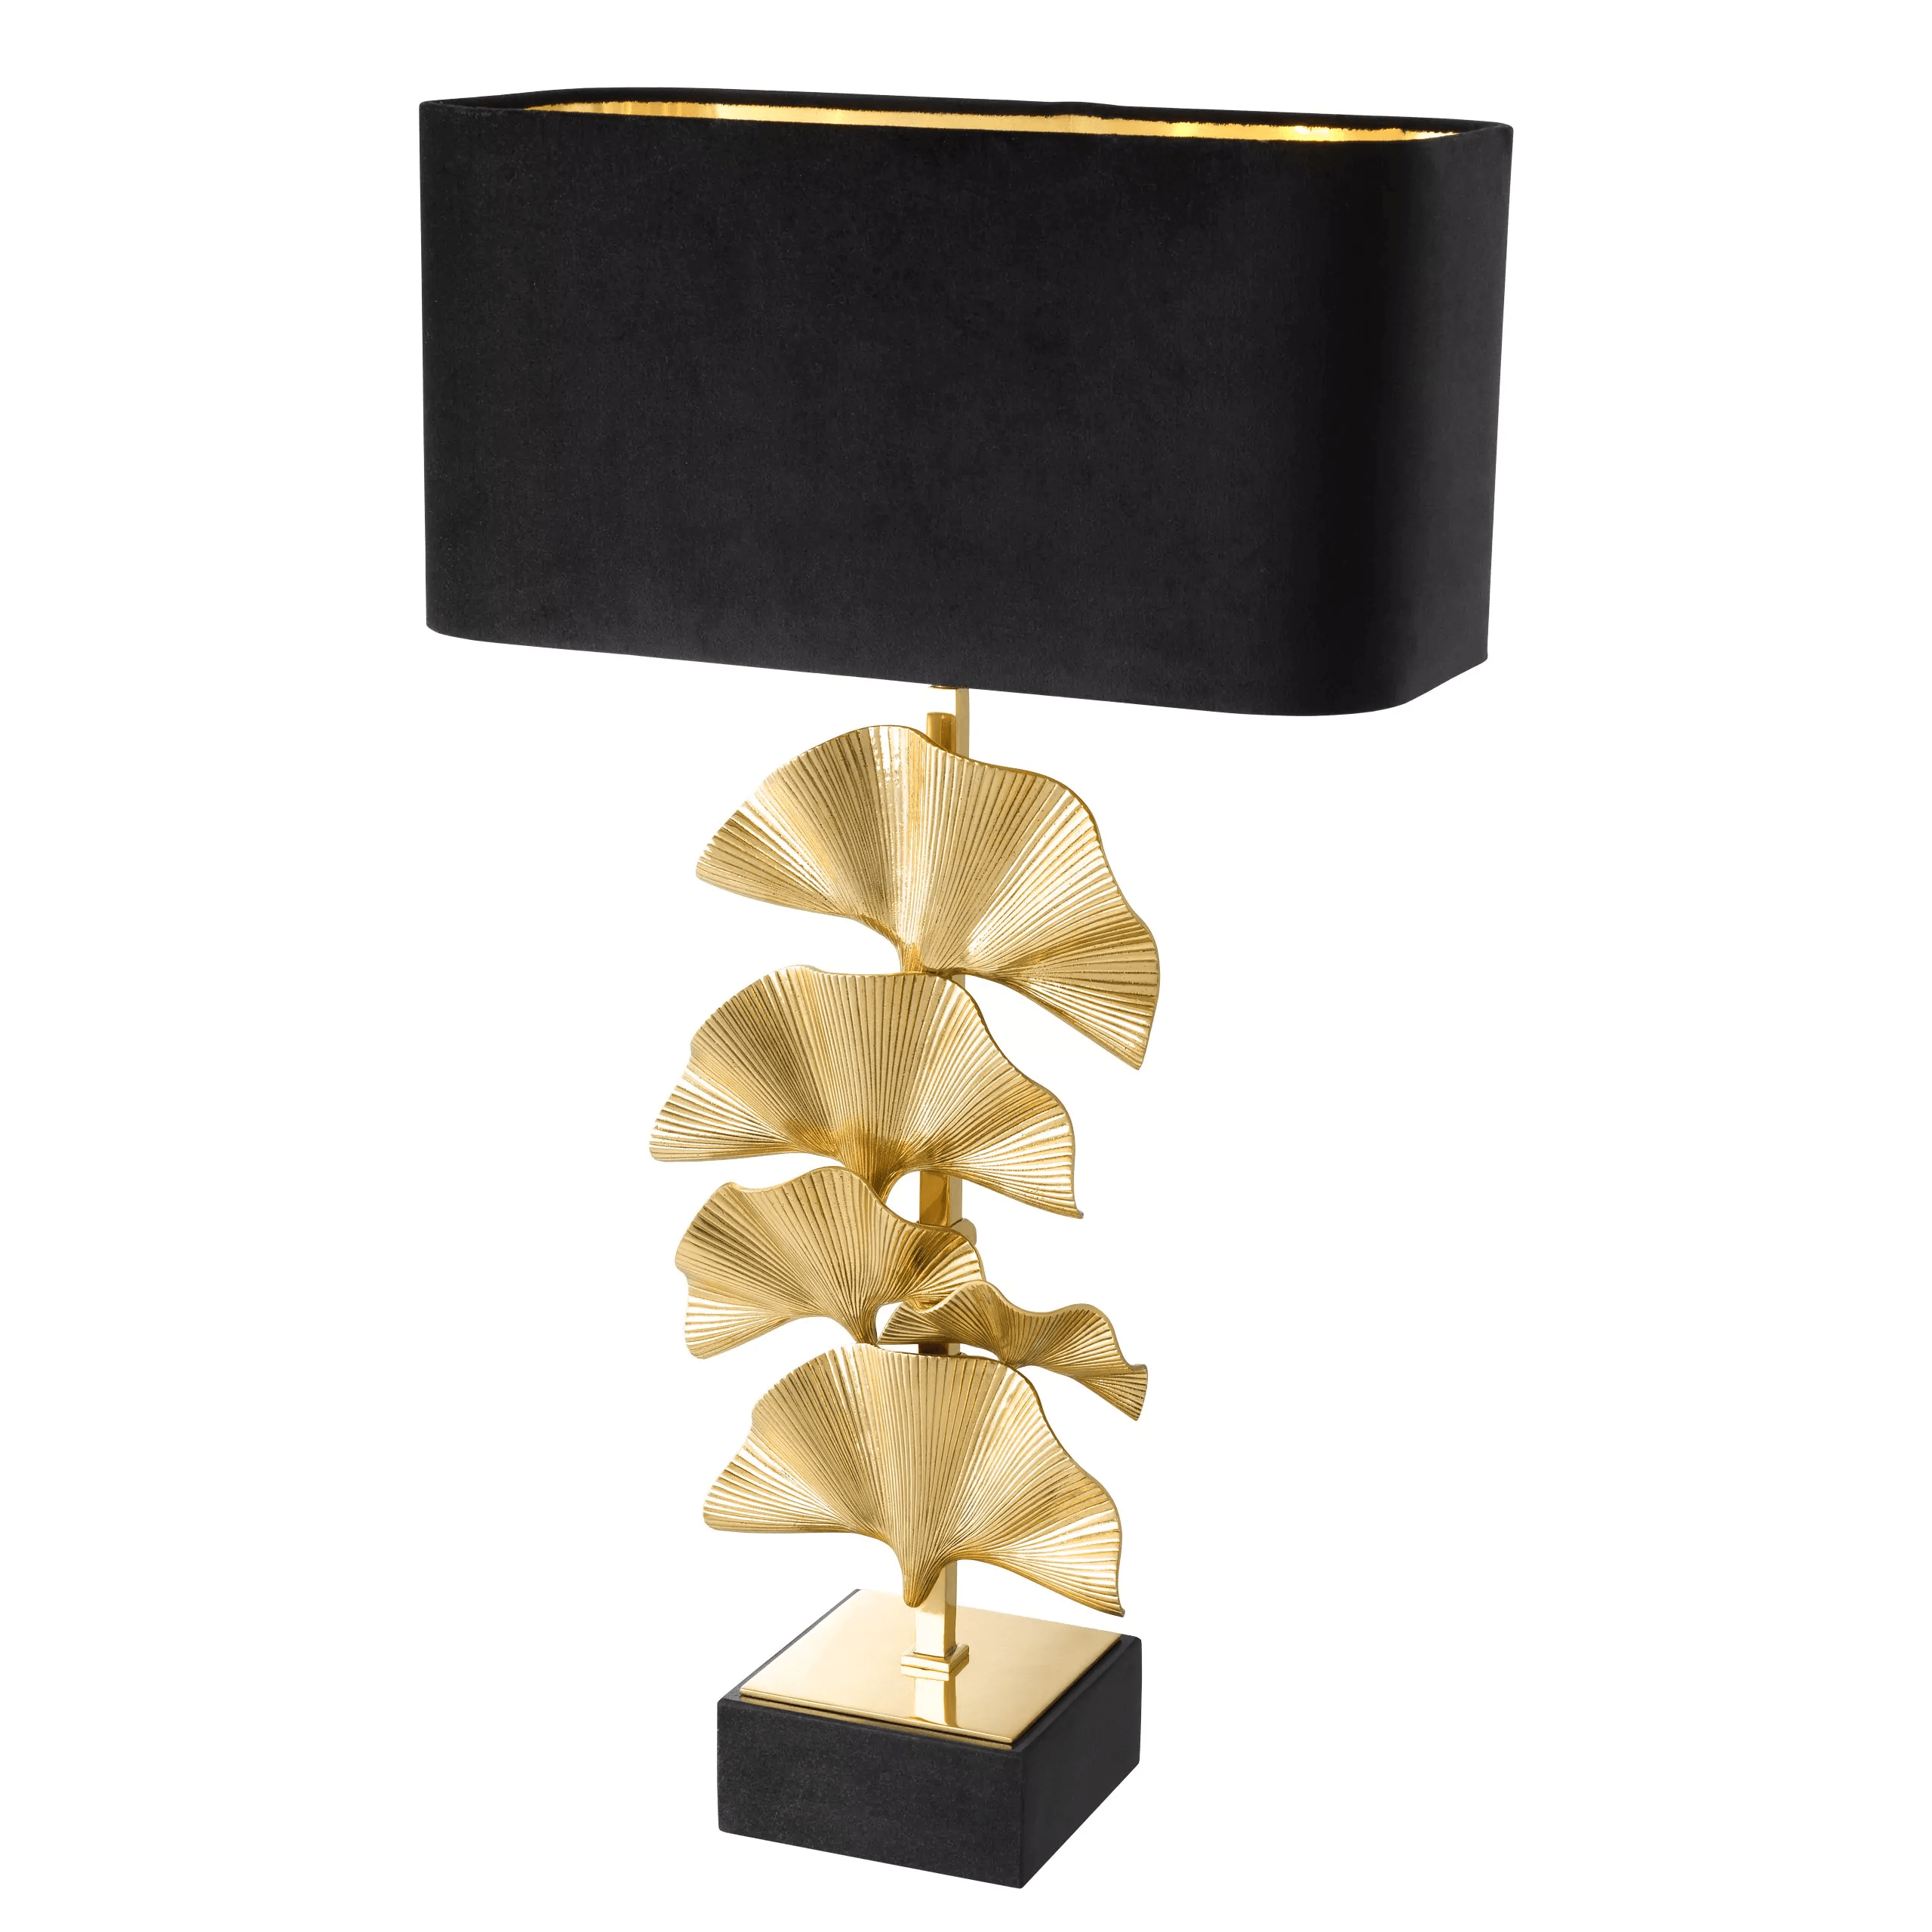 Eichholtz OLIVIER Glamourösen Tischlampe Messing poliert Granitsockel Inklusive schwarzem Samtschirm Handarbeit - HomeDesign Knaus